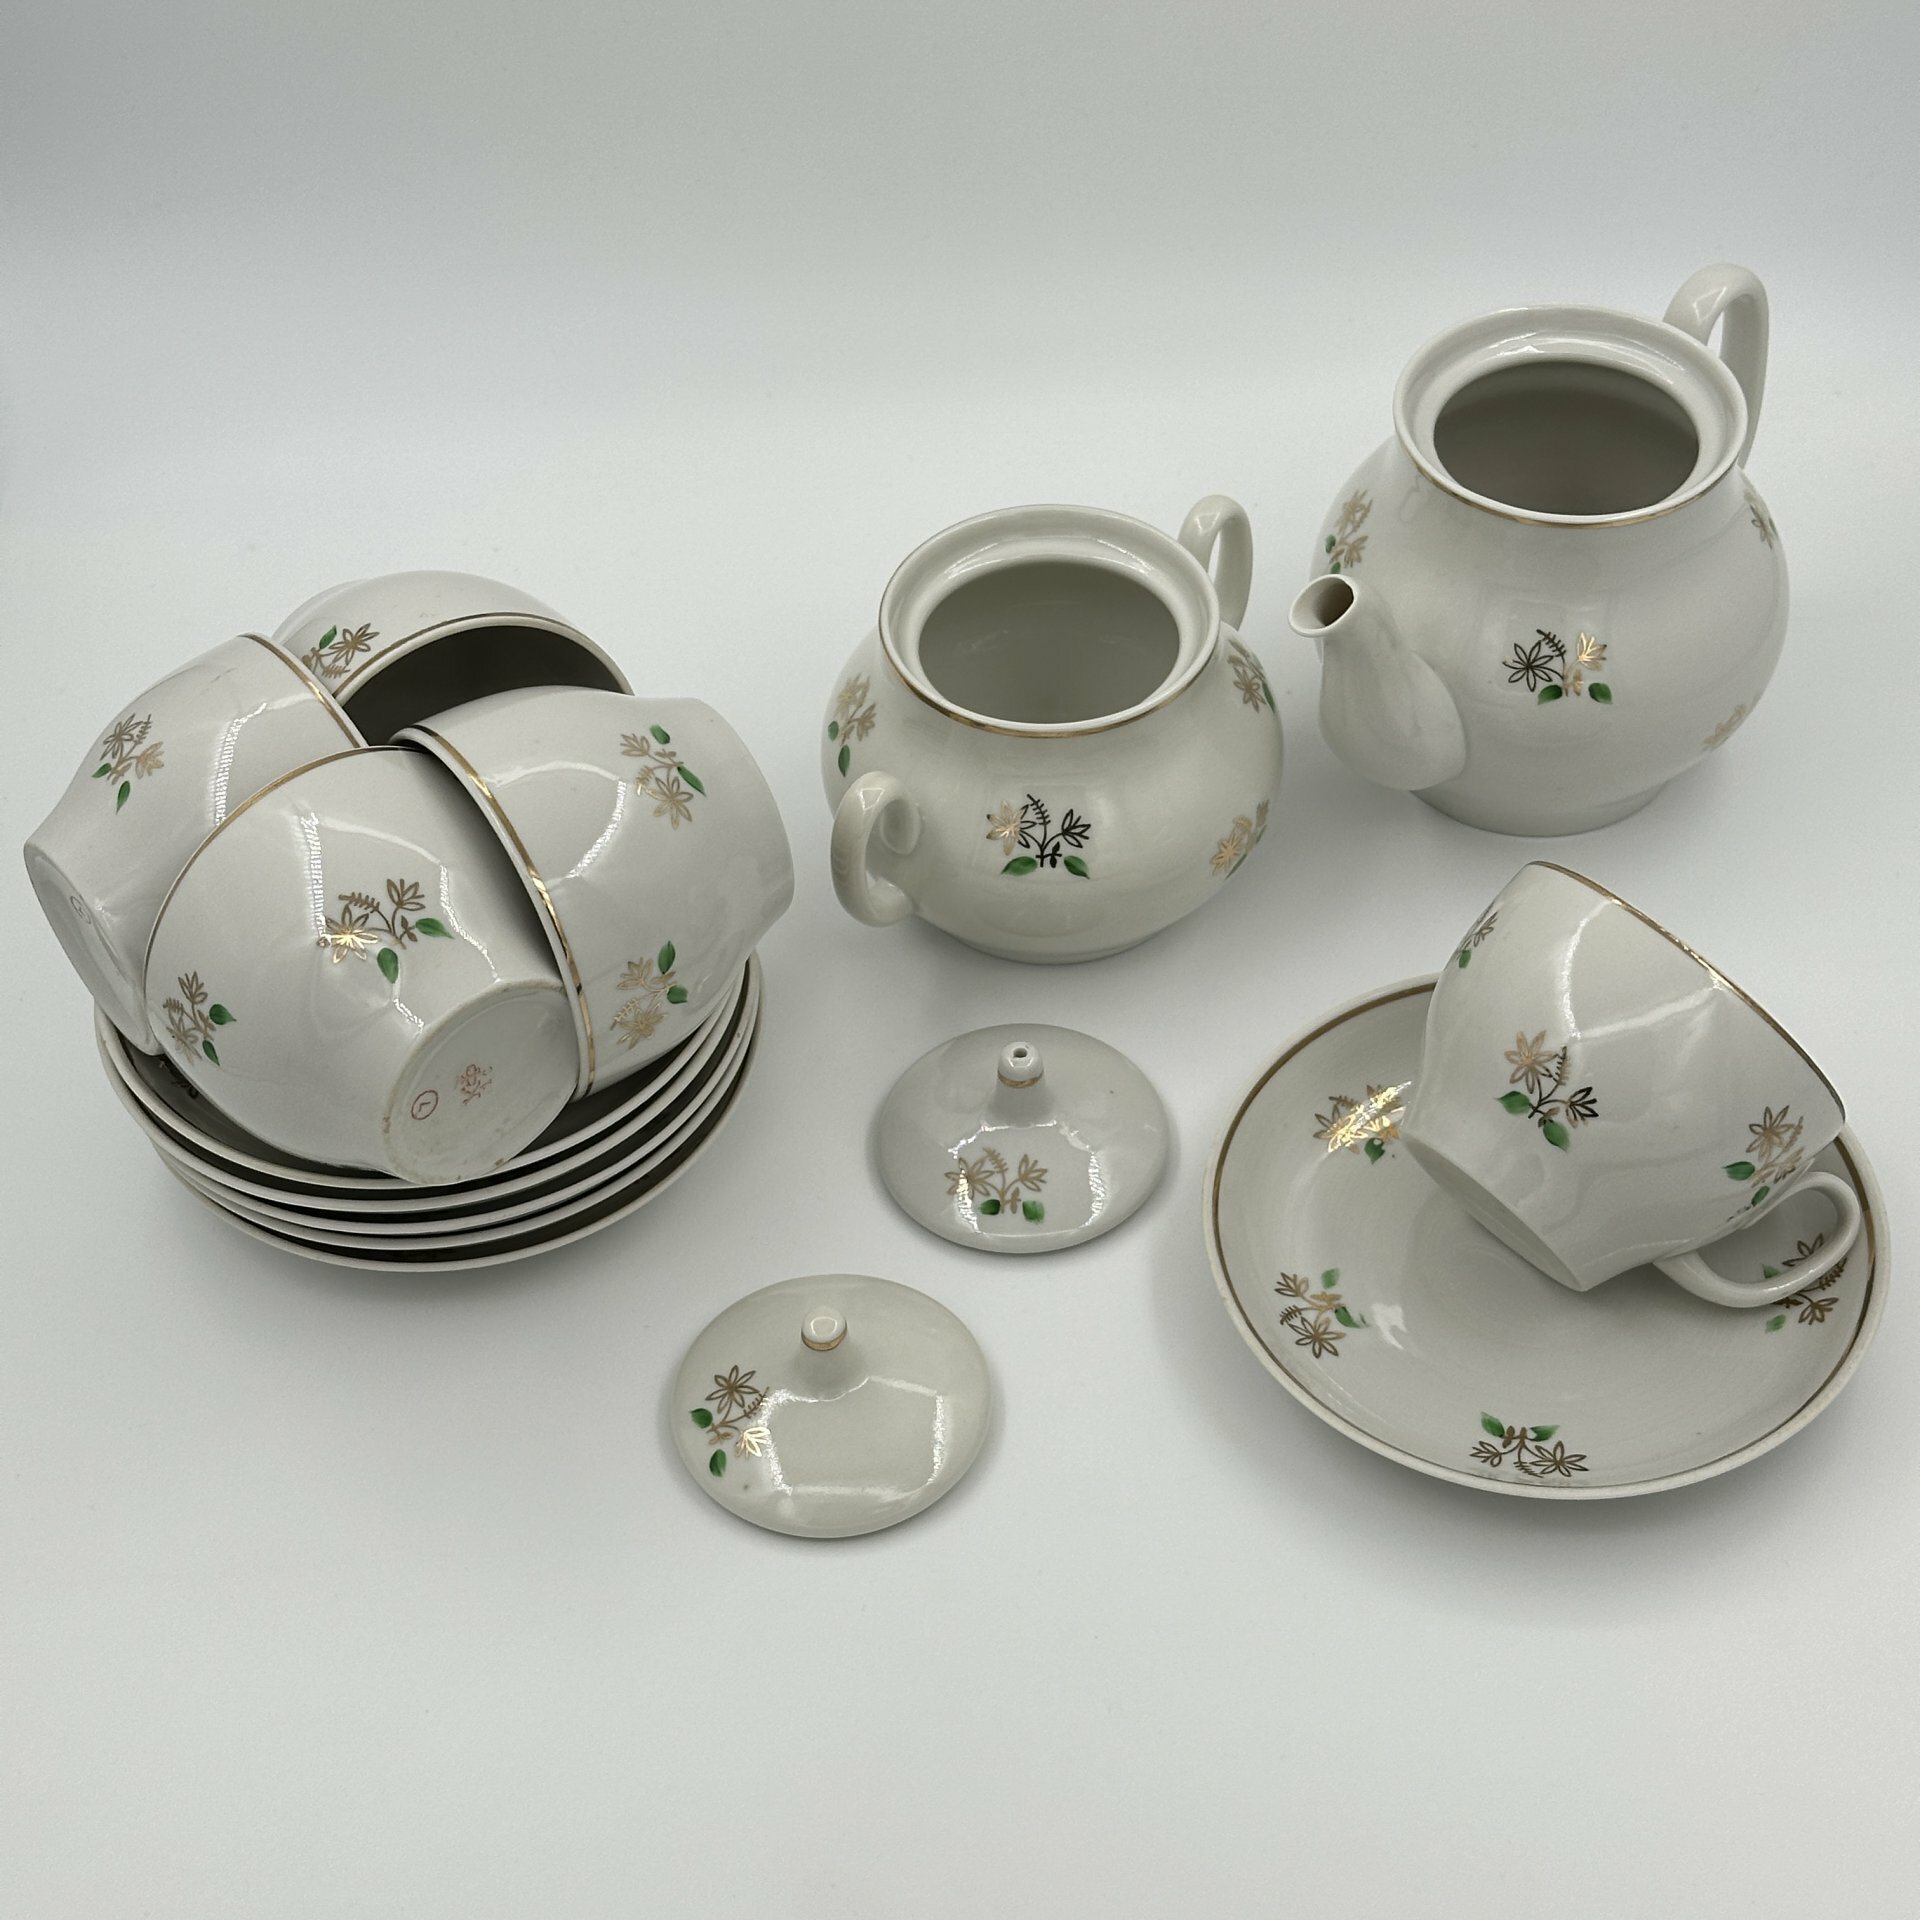 Сервиз чайный с нежным растительным декором на 5 персон (13 предметов), фарфор